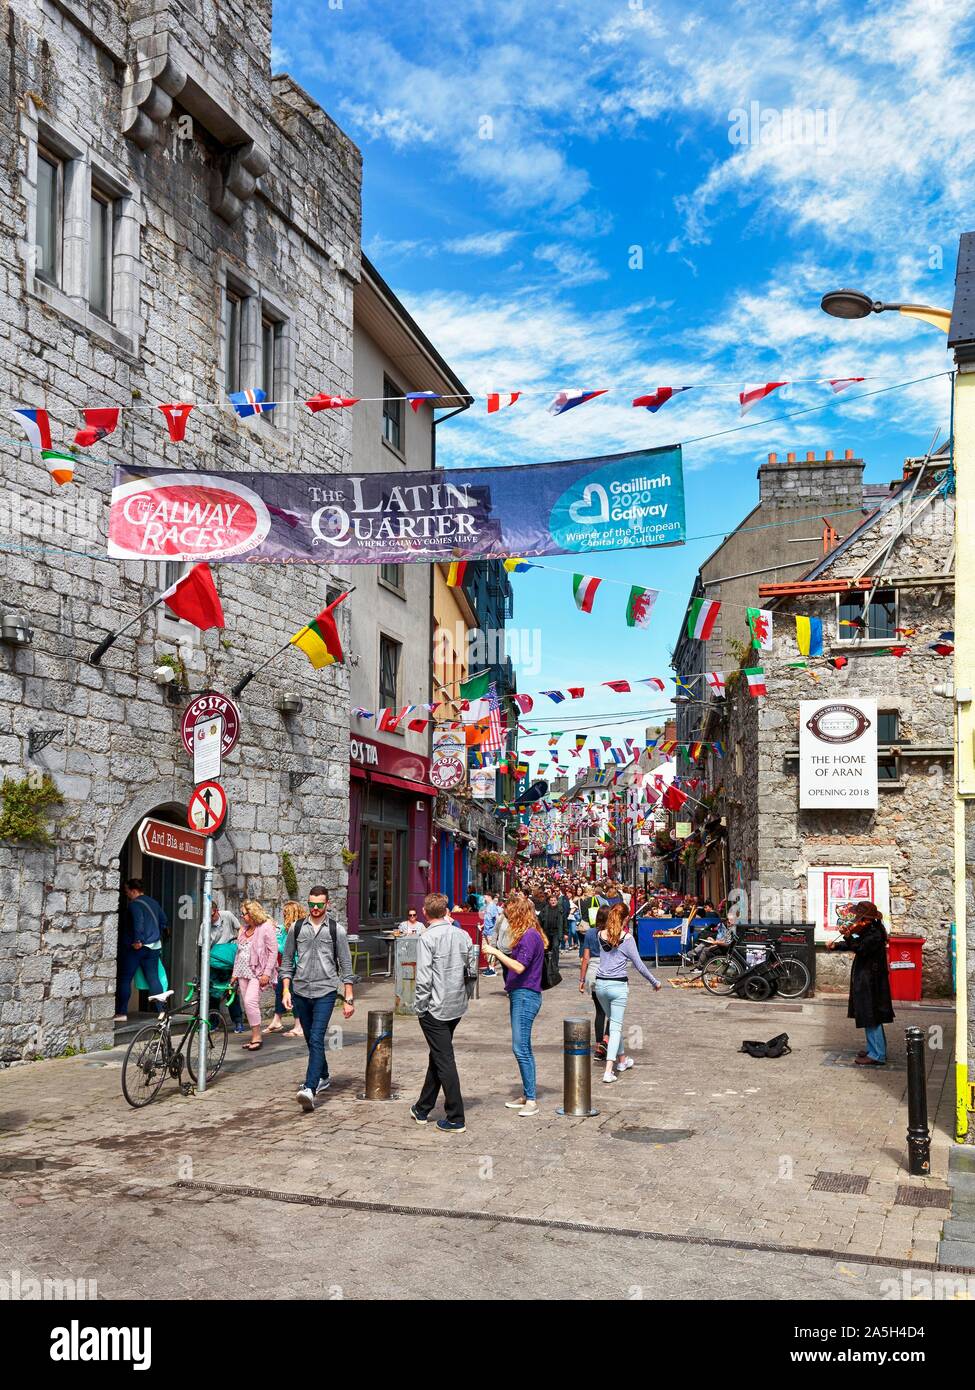 La zona pedonale nel Quartiere Latino, decorata con striscioni e bandiere, Capitale Europea della Cultura 2020, Galway, Irlanda Foto Stock